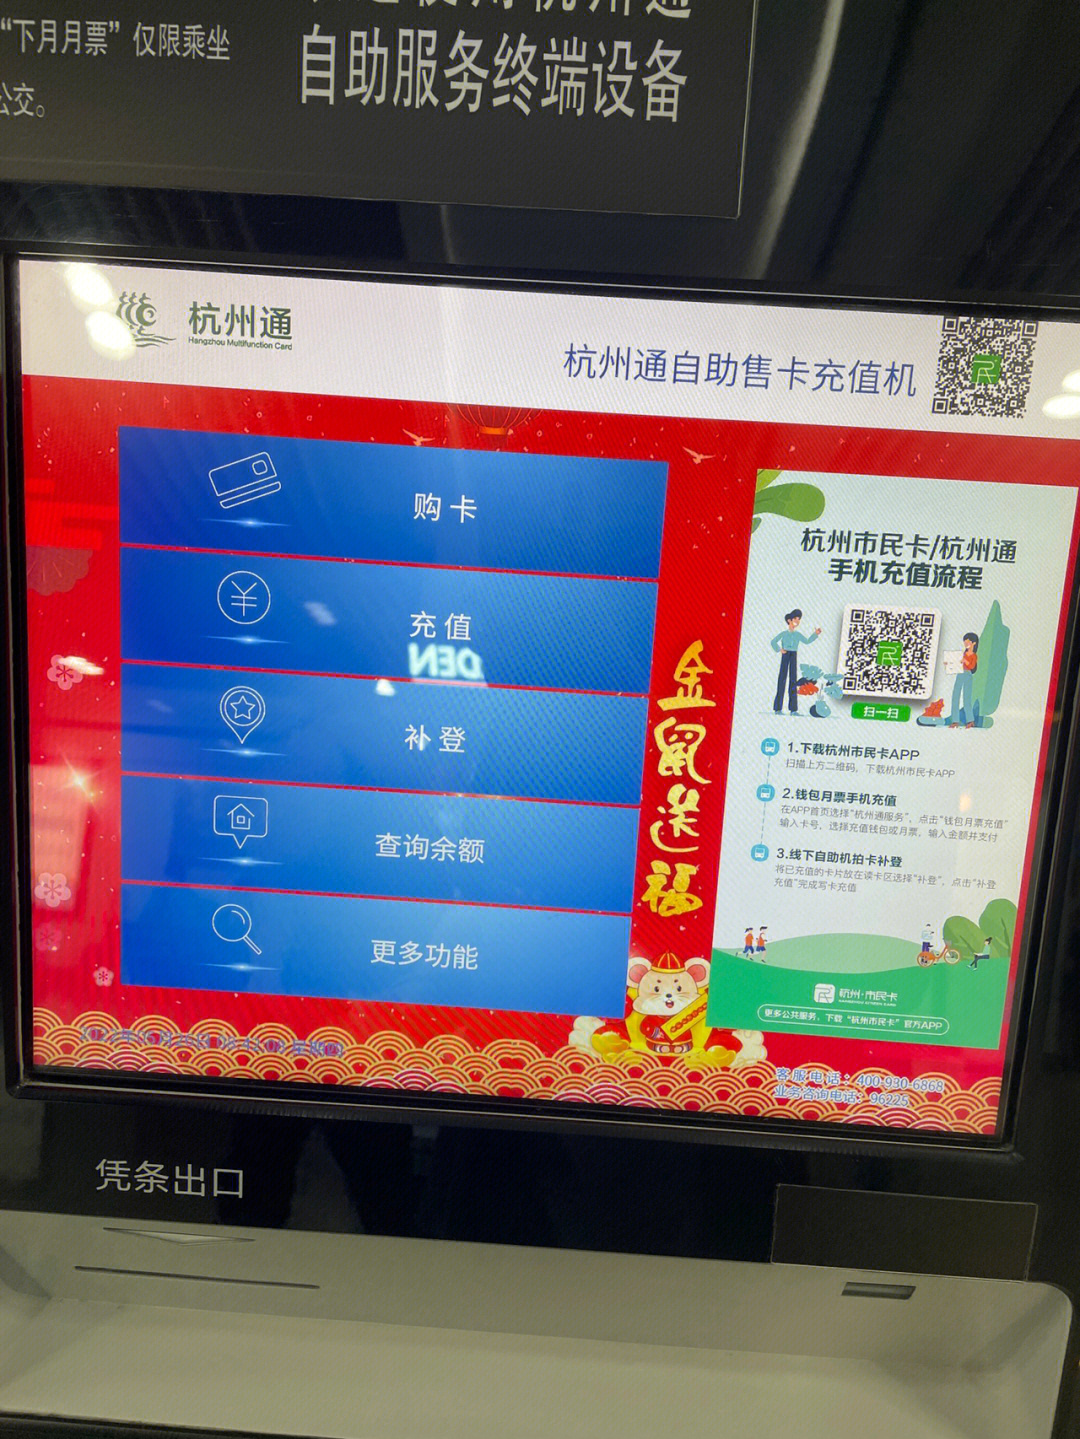 杭州市民卡开通地铁功能